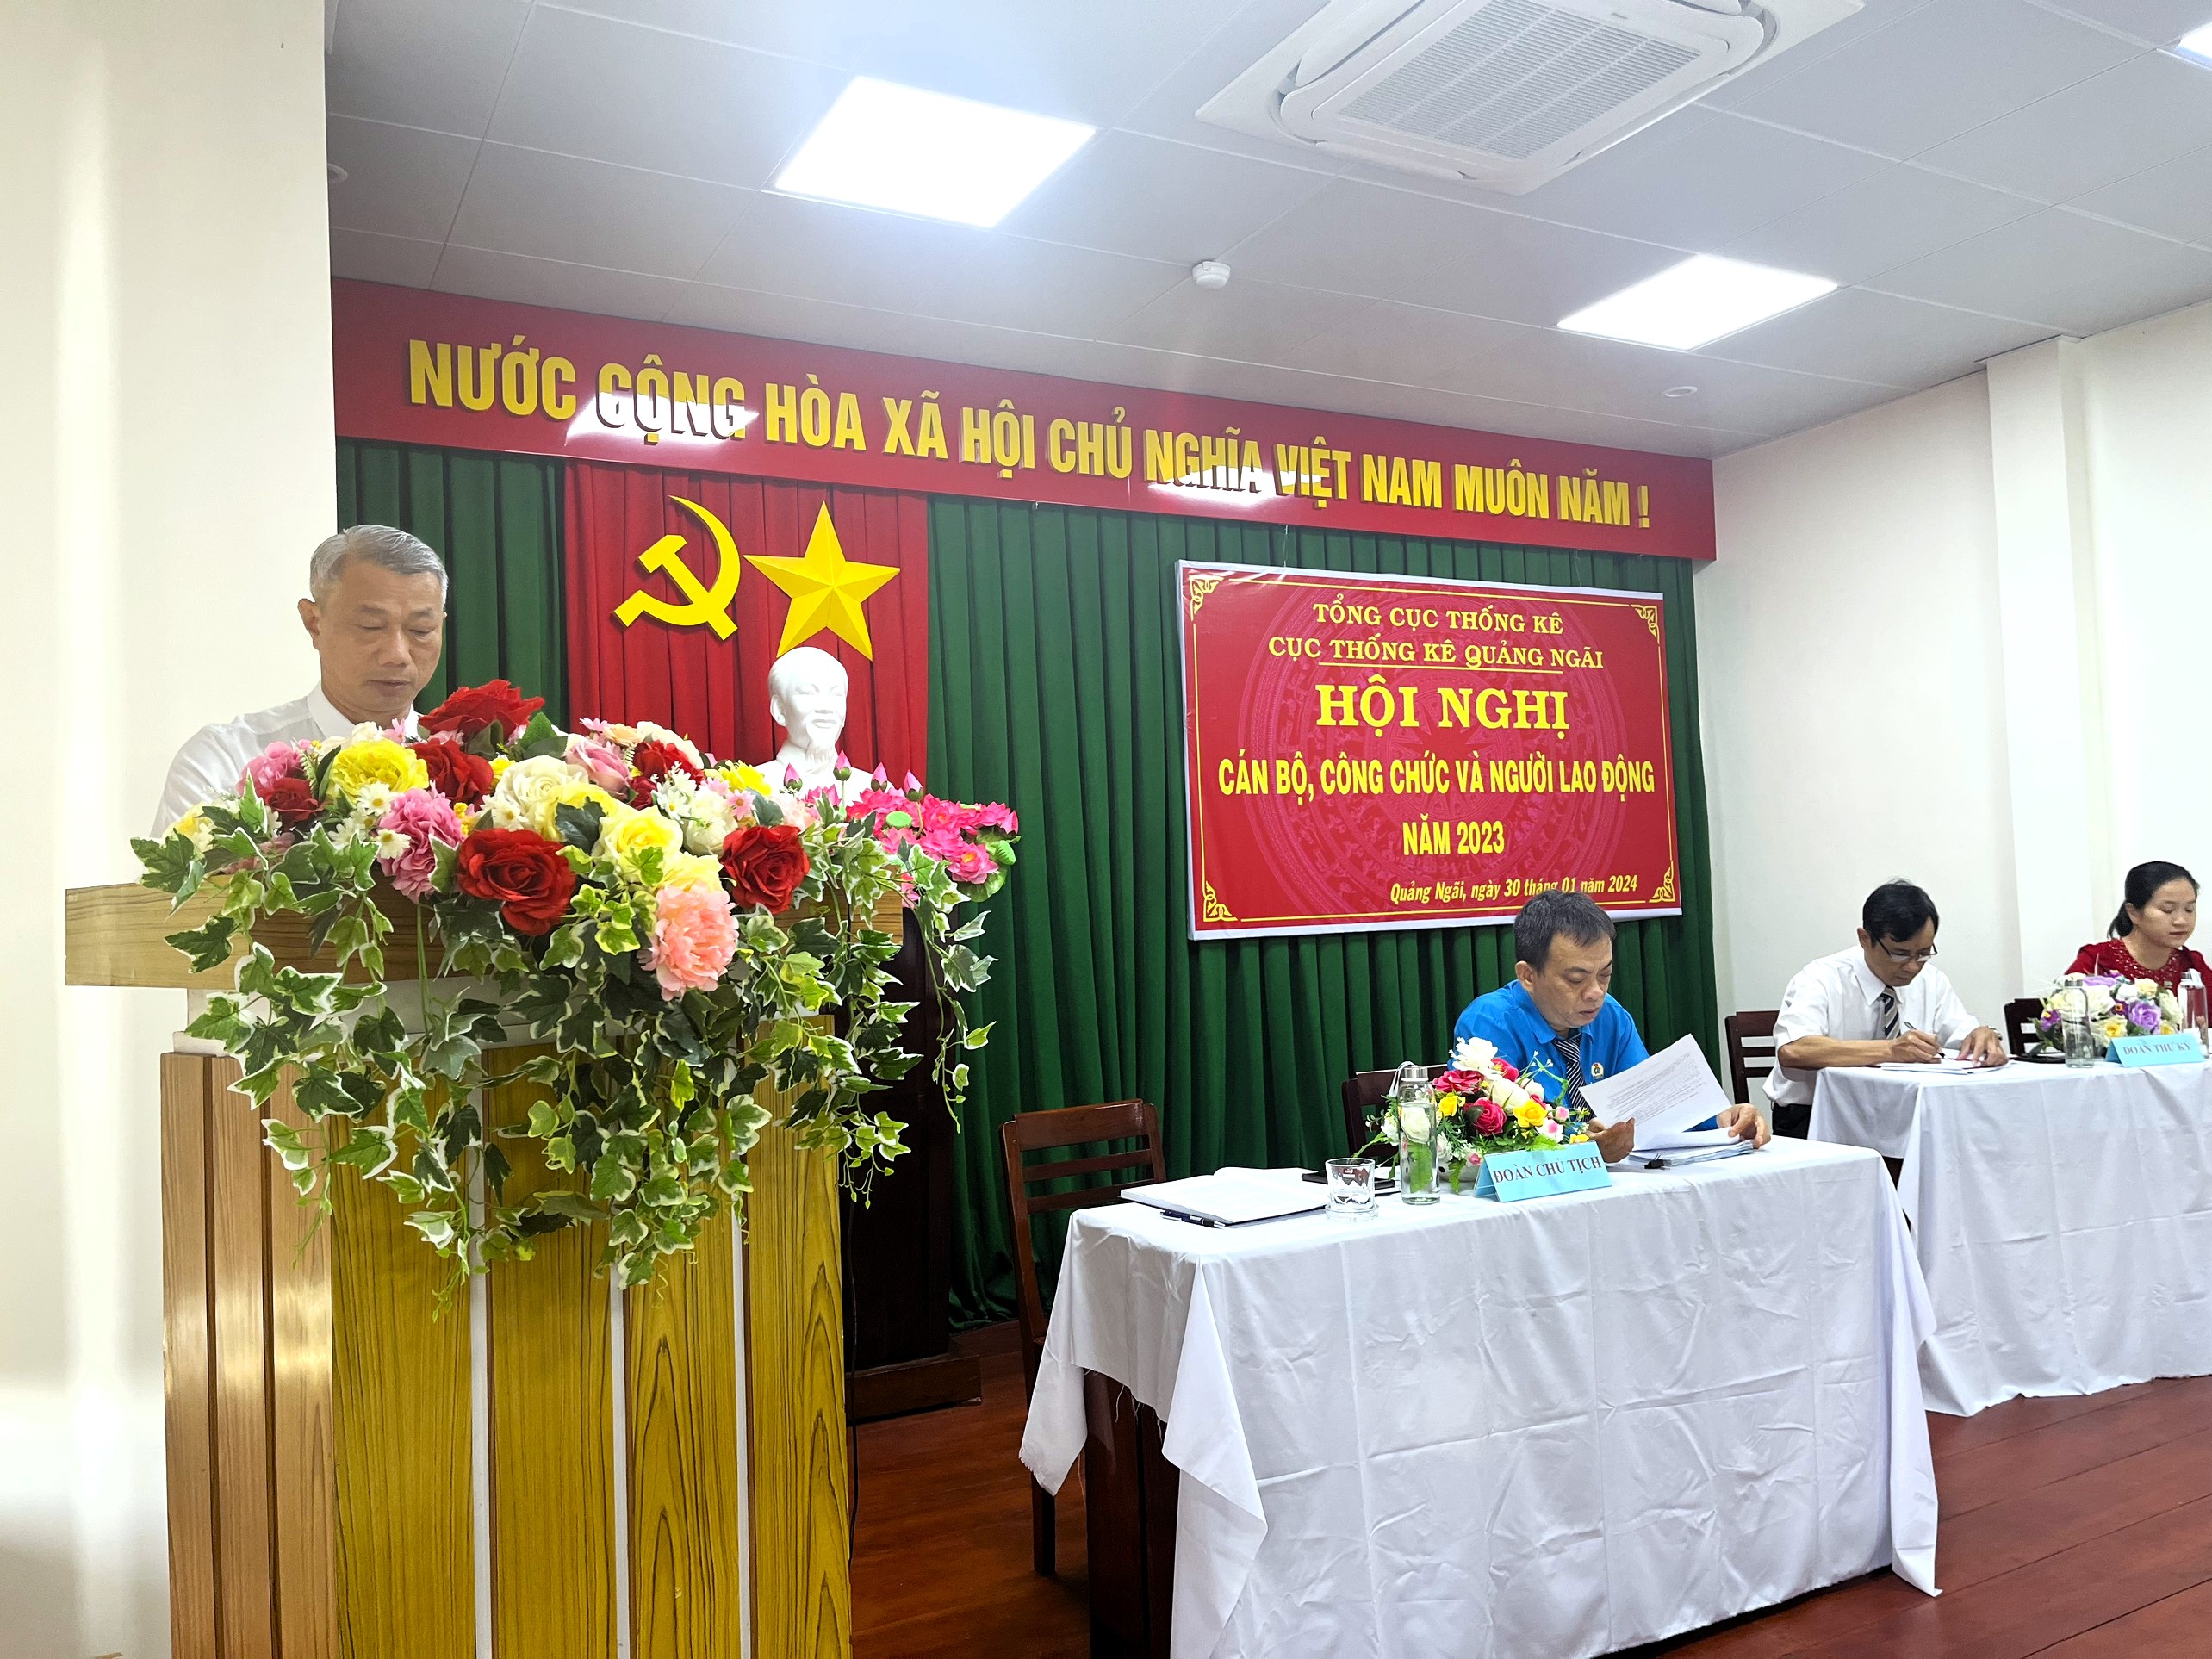 Hội nghị công chức và người lao động Cục Thống kê tỉnh Quảng Ngãi năm 2023